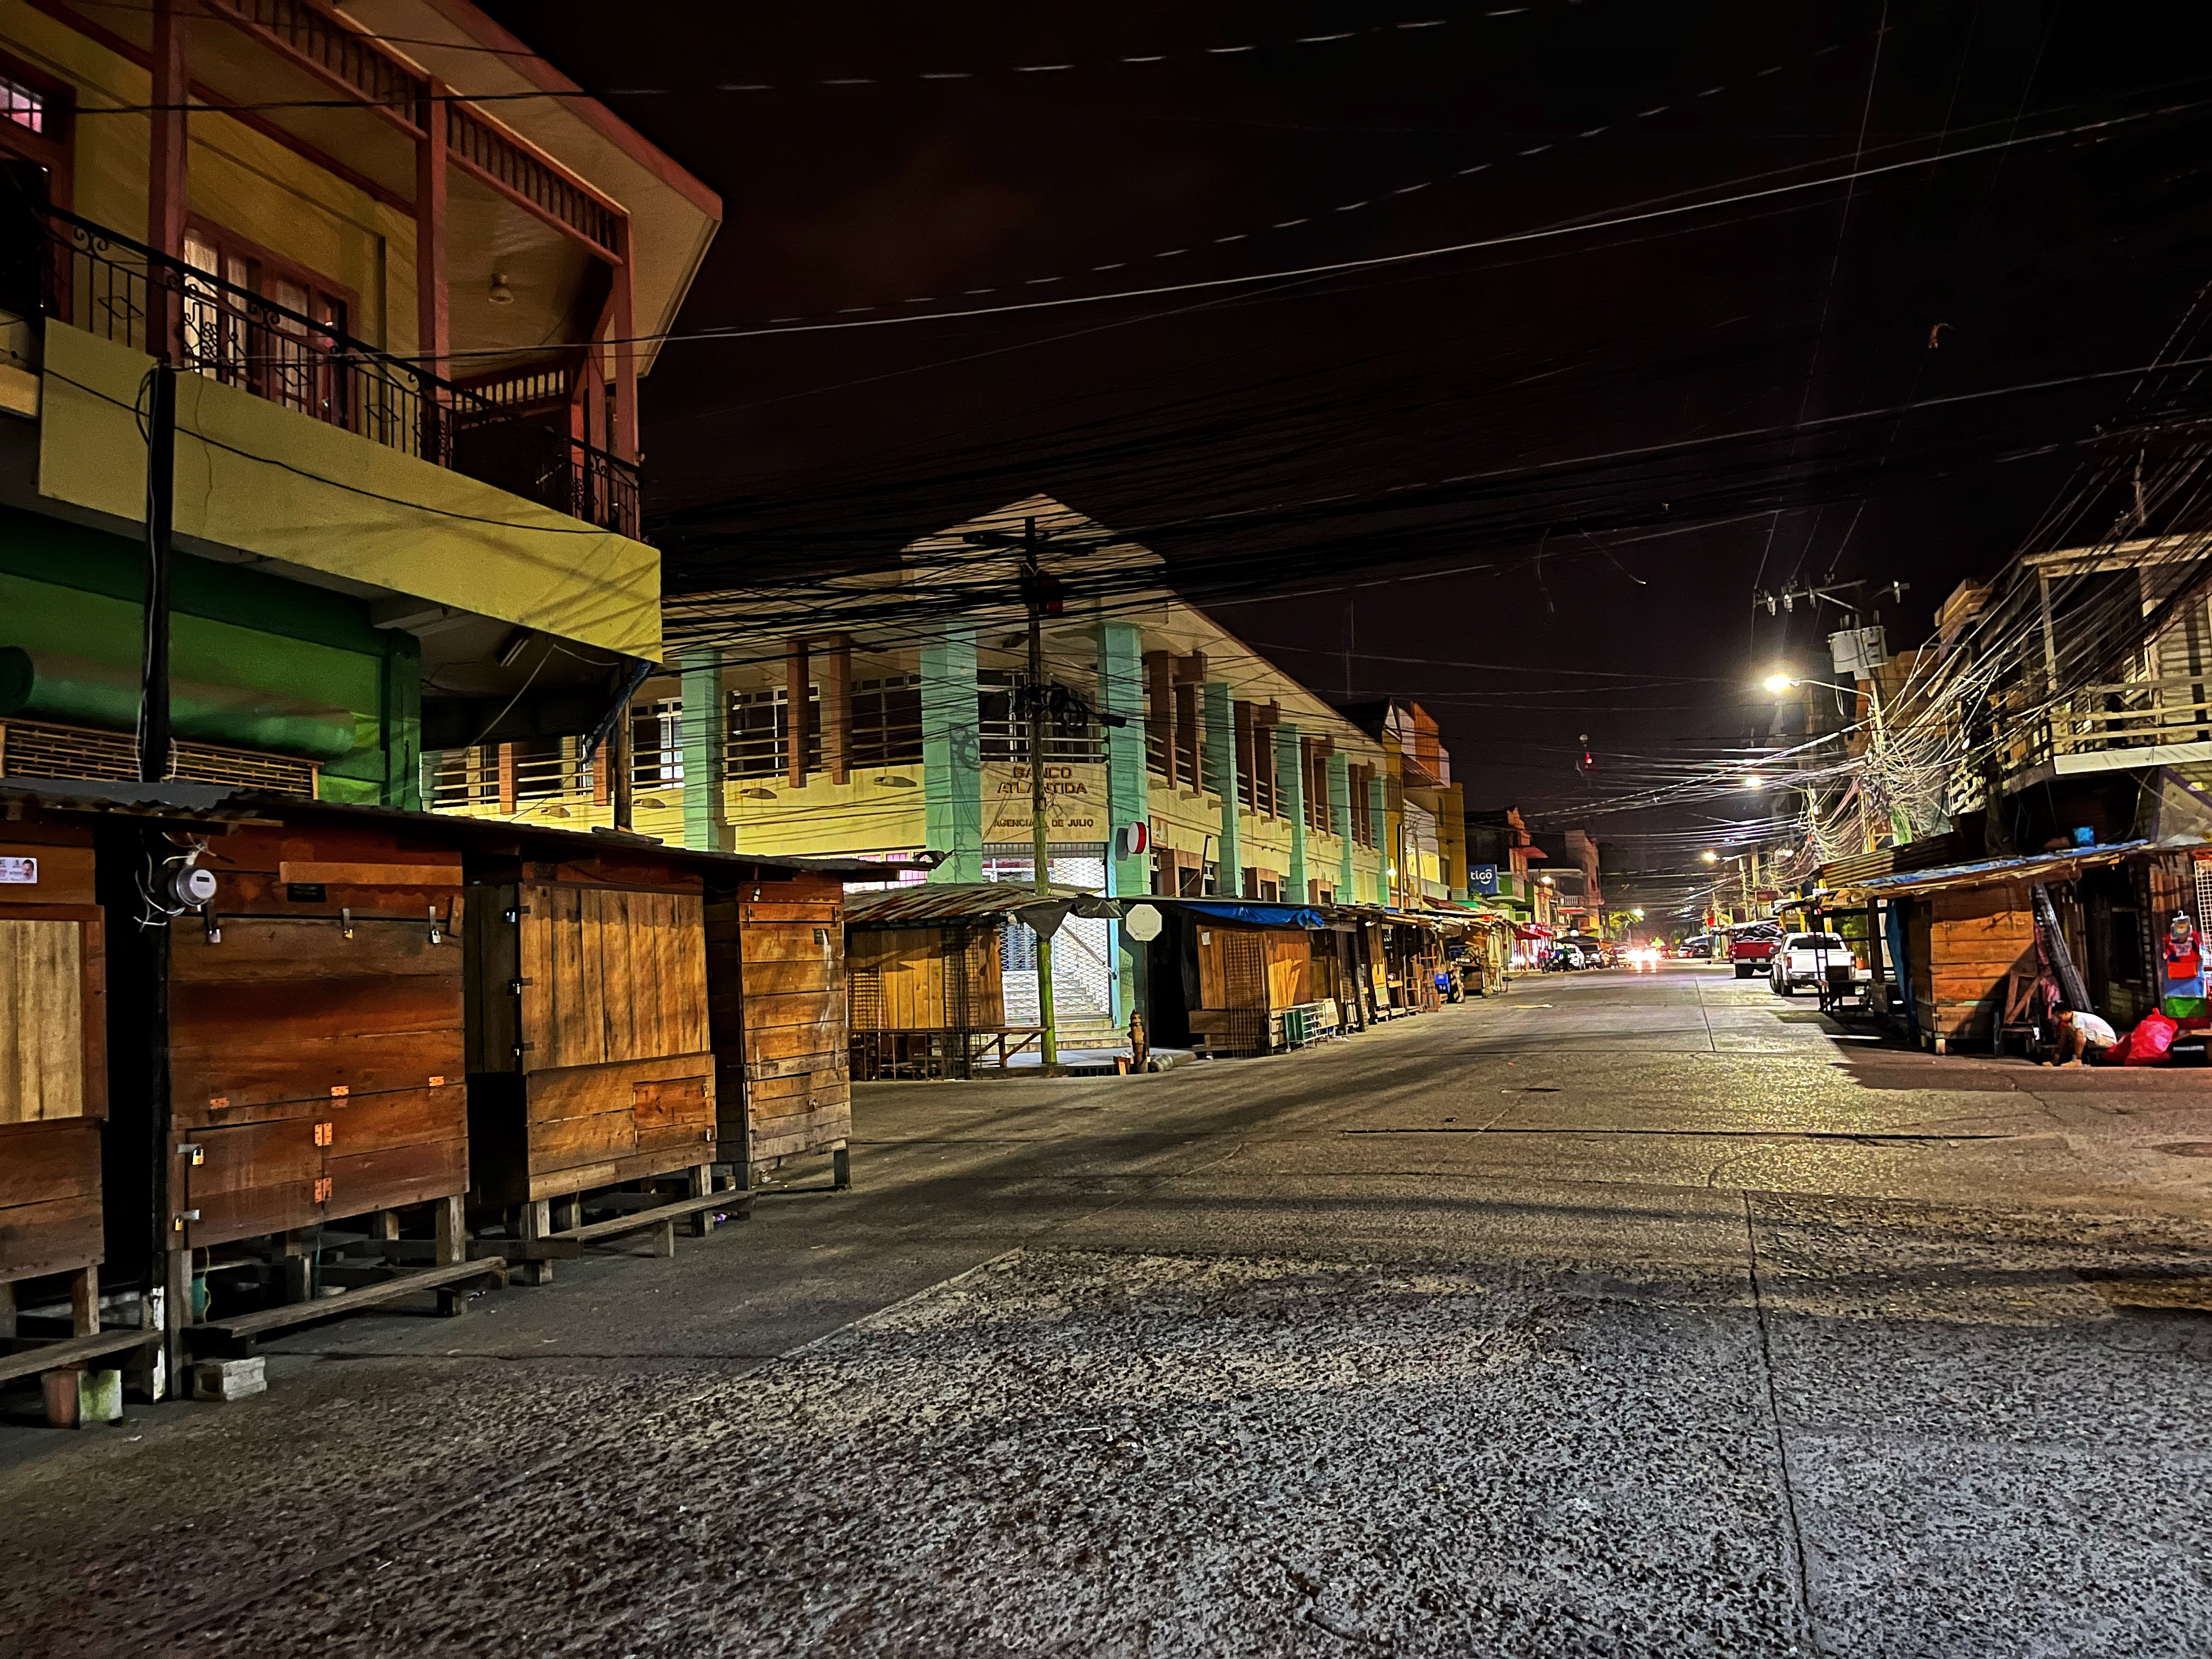 A közbiztonság miatt 18 óra után már csak néhány étkezde és rengeteg gyógyszertár tart nyitva, 19 órakor pedig ilyenné néptelenné válnak az utcák is. Ez a kép La Ceiba egyik utcáján készült.